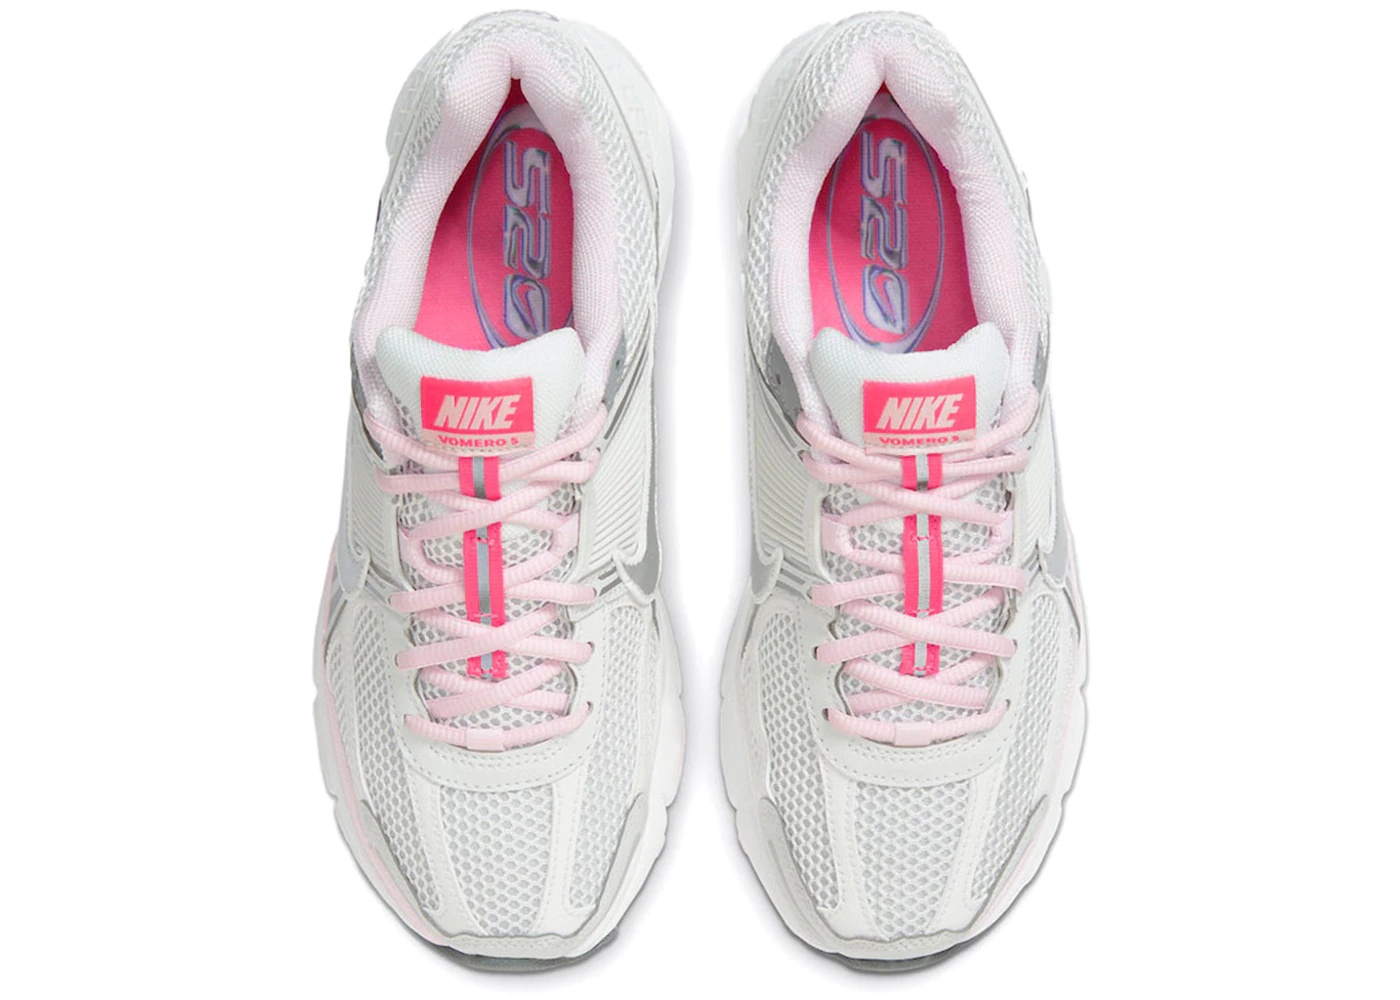 Nike Zoom Vomero 5 520 Pack White Pink (Women's) - 3